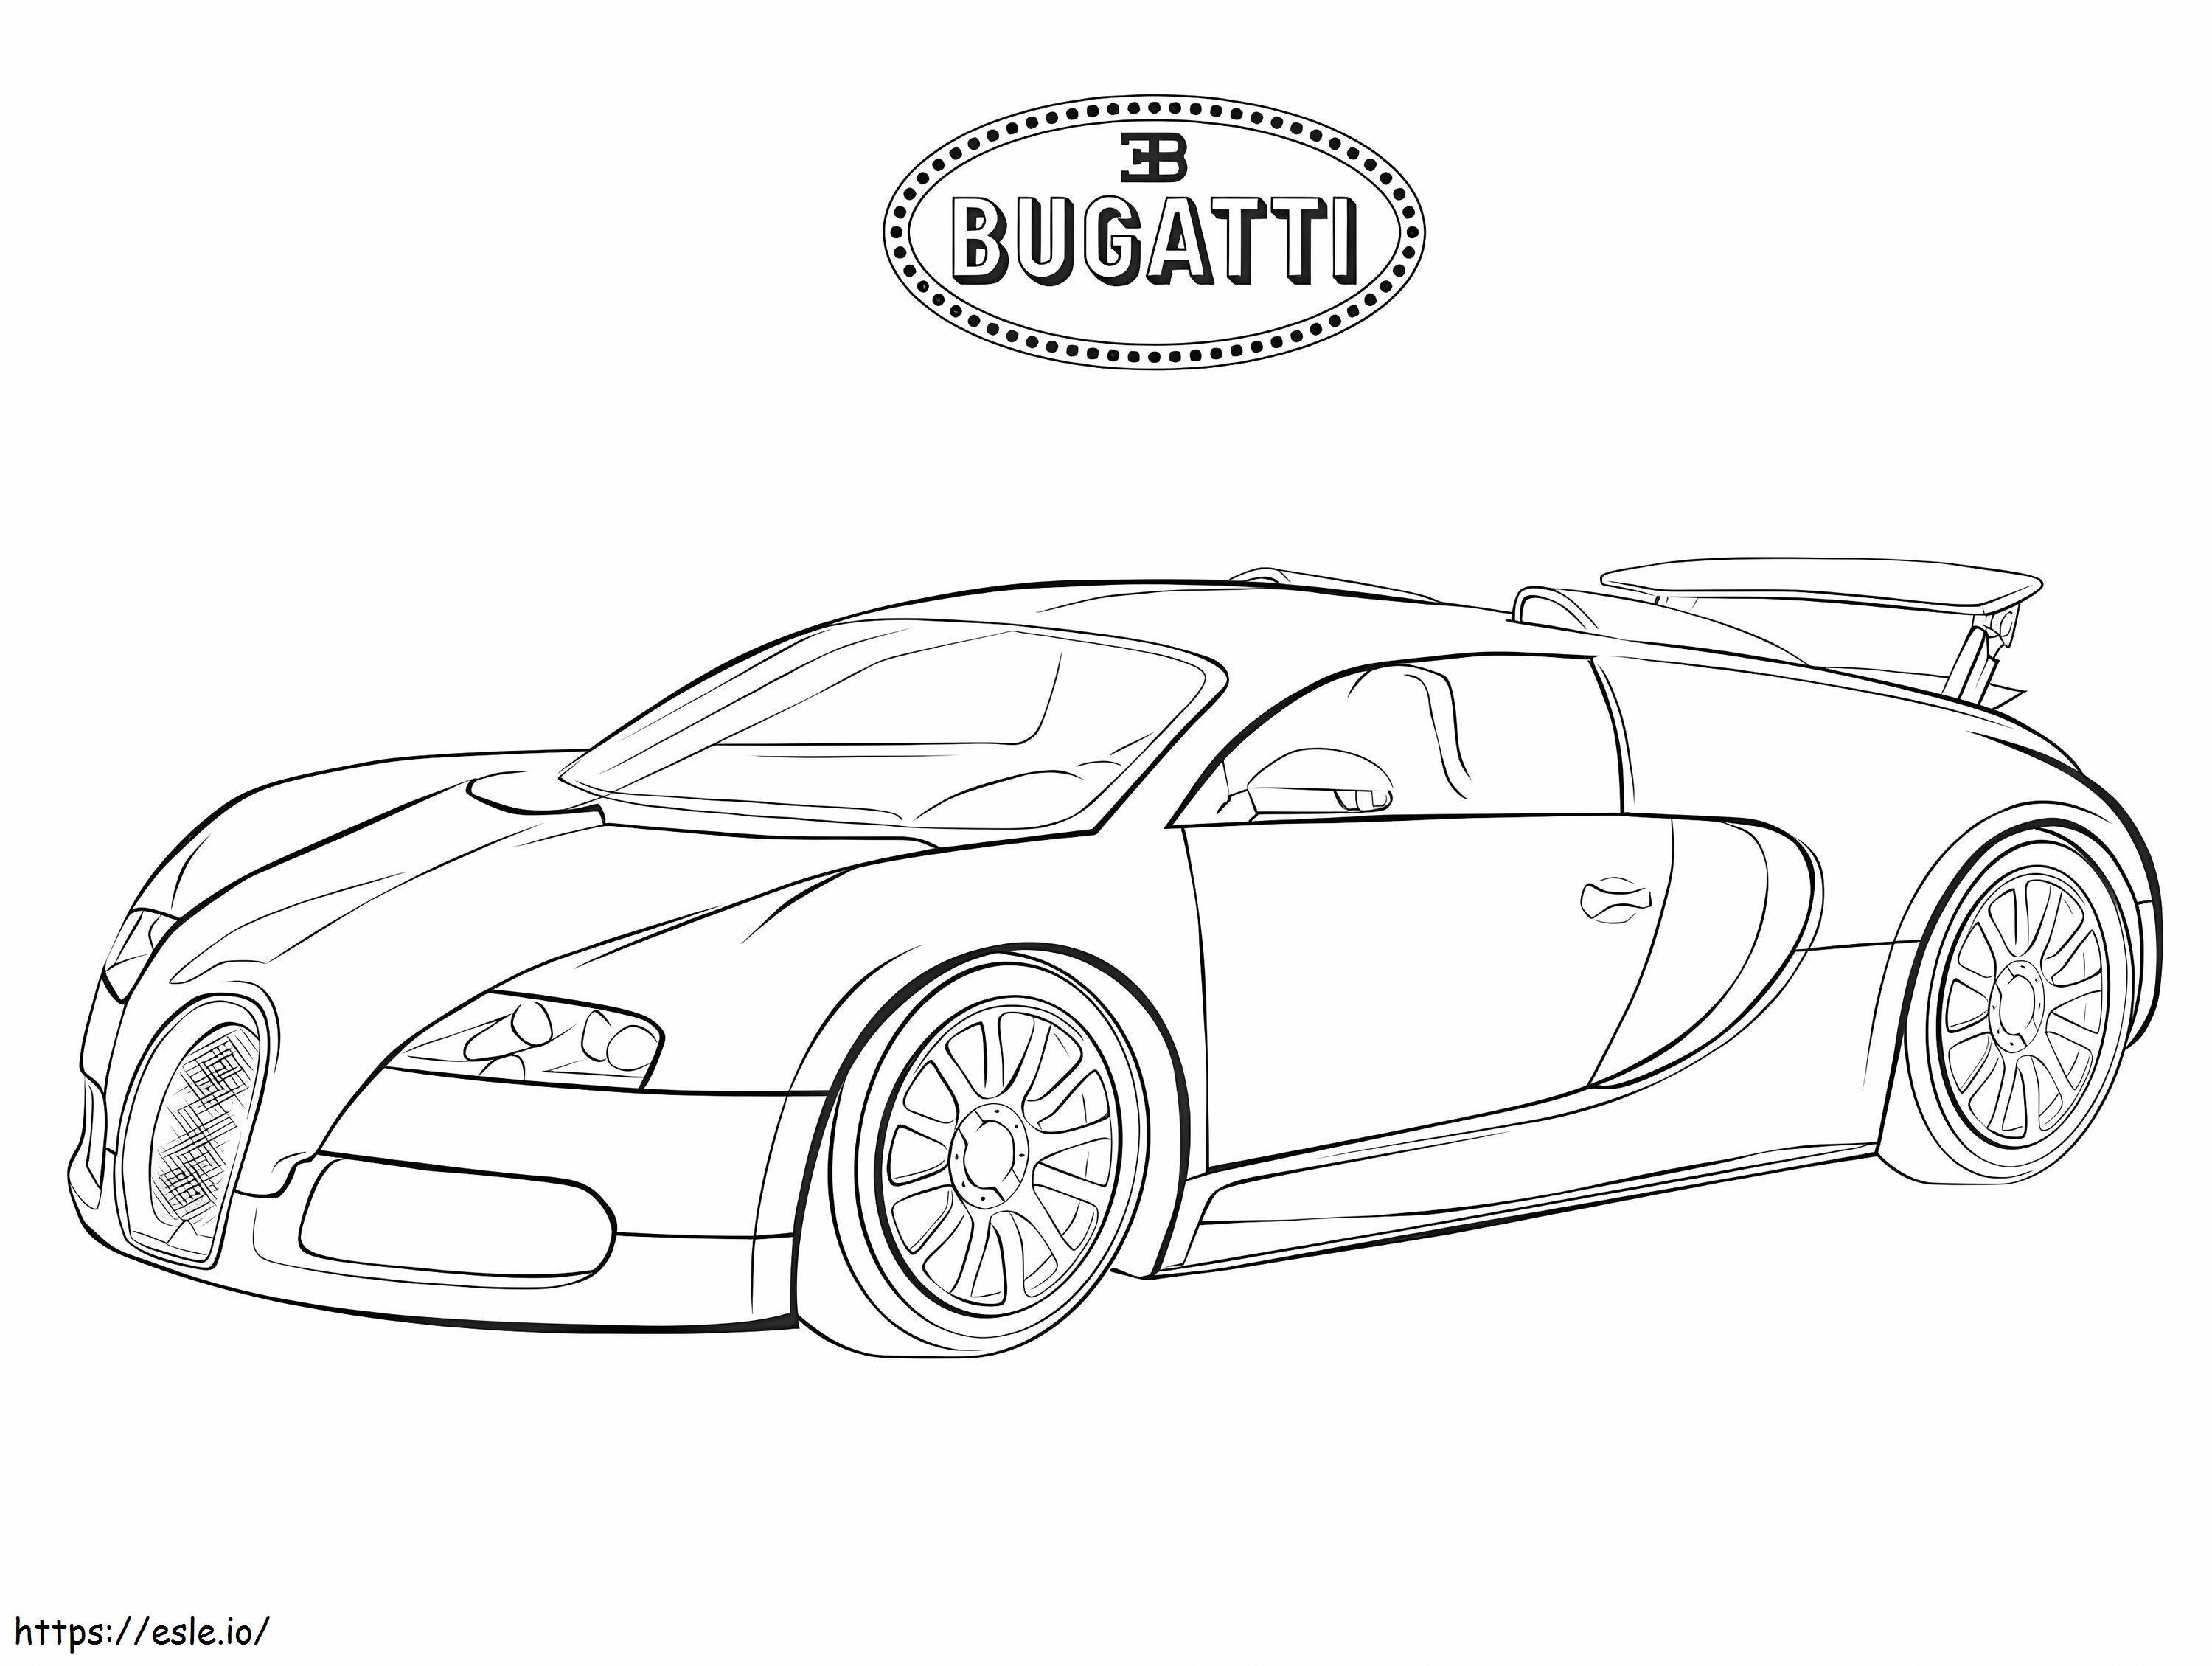 Bugatti 6 coloring page